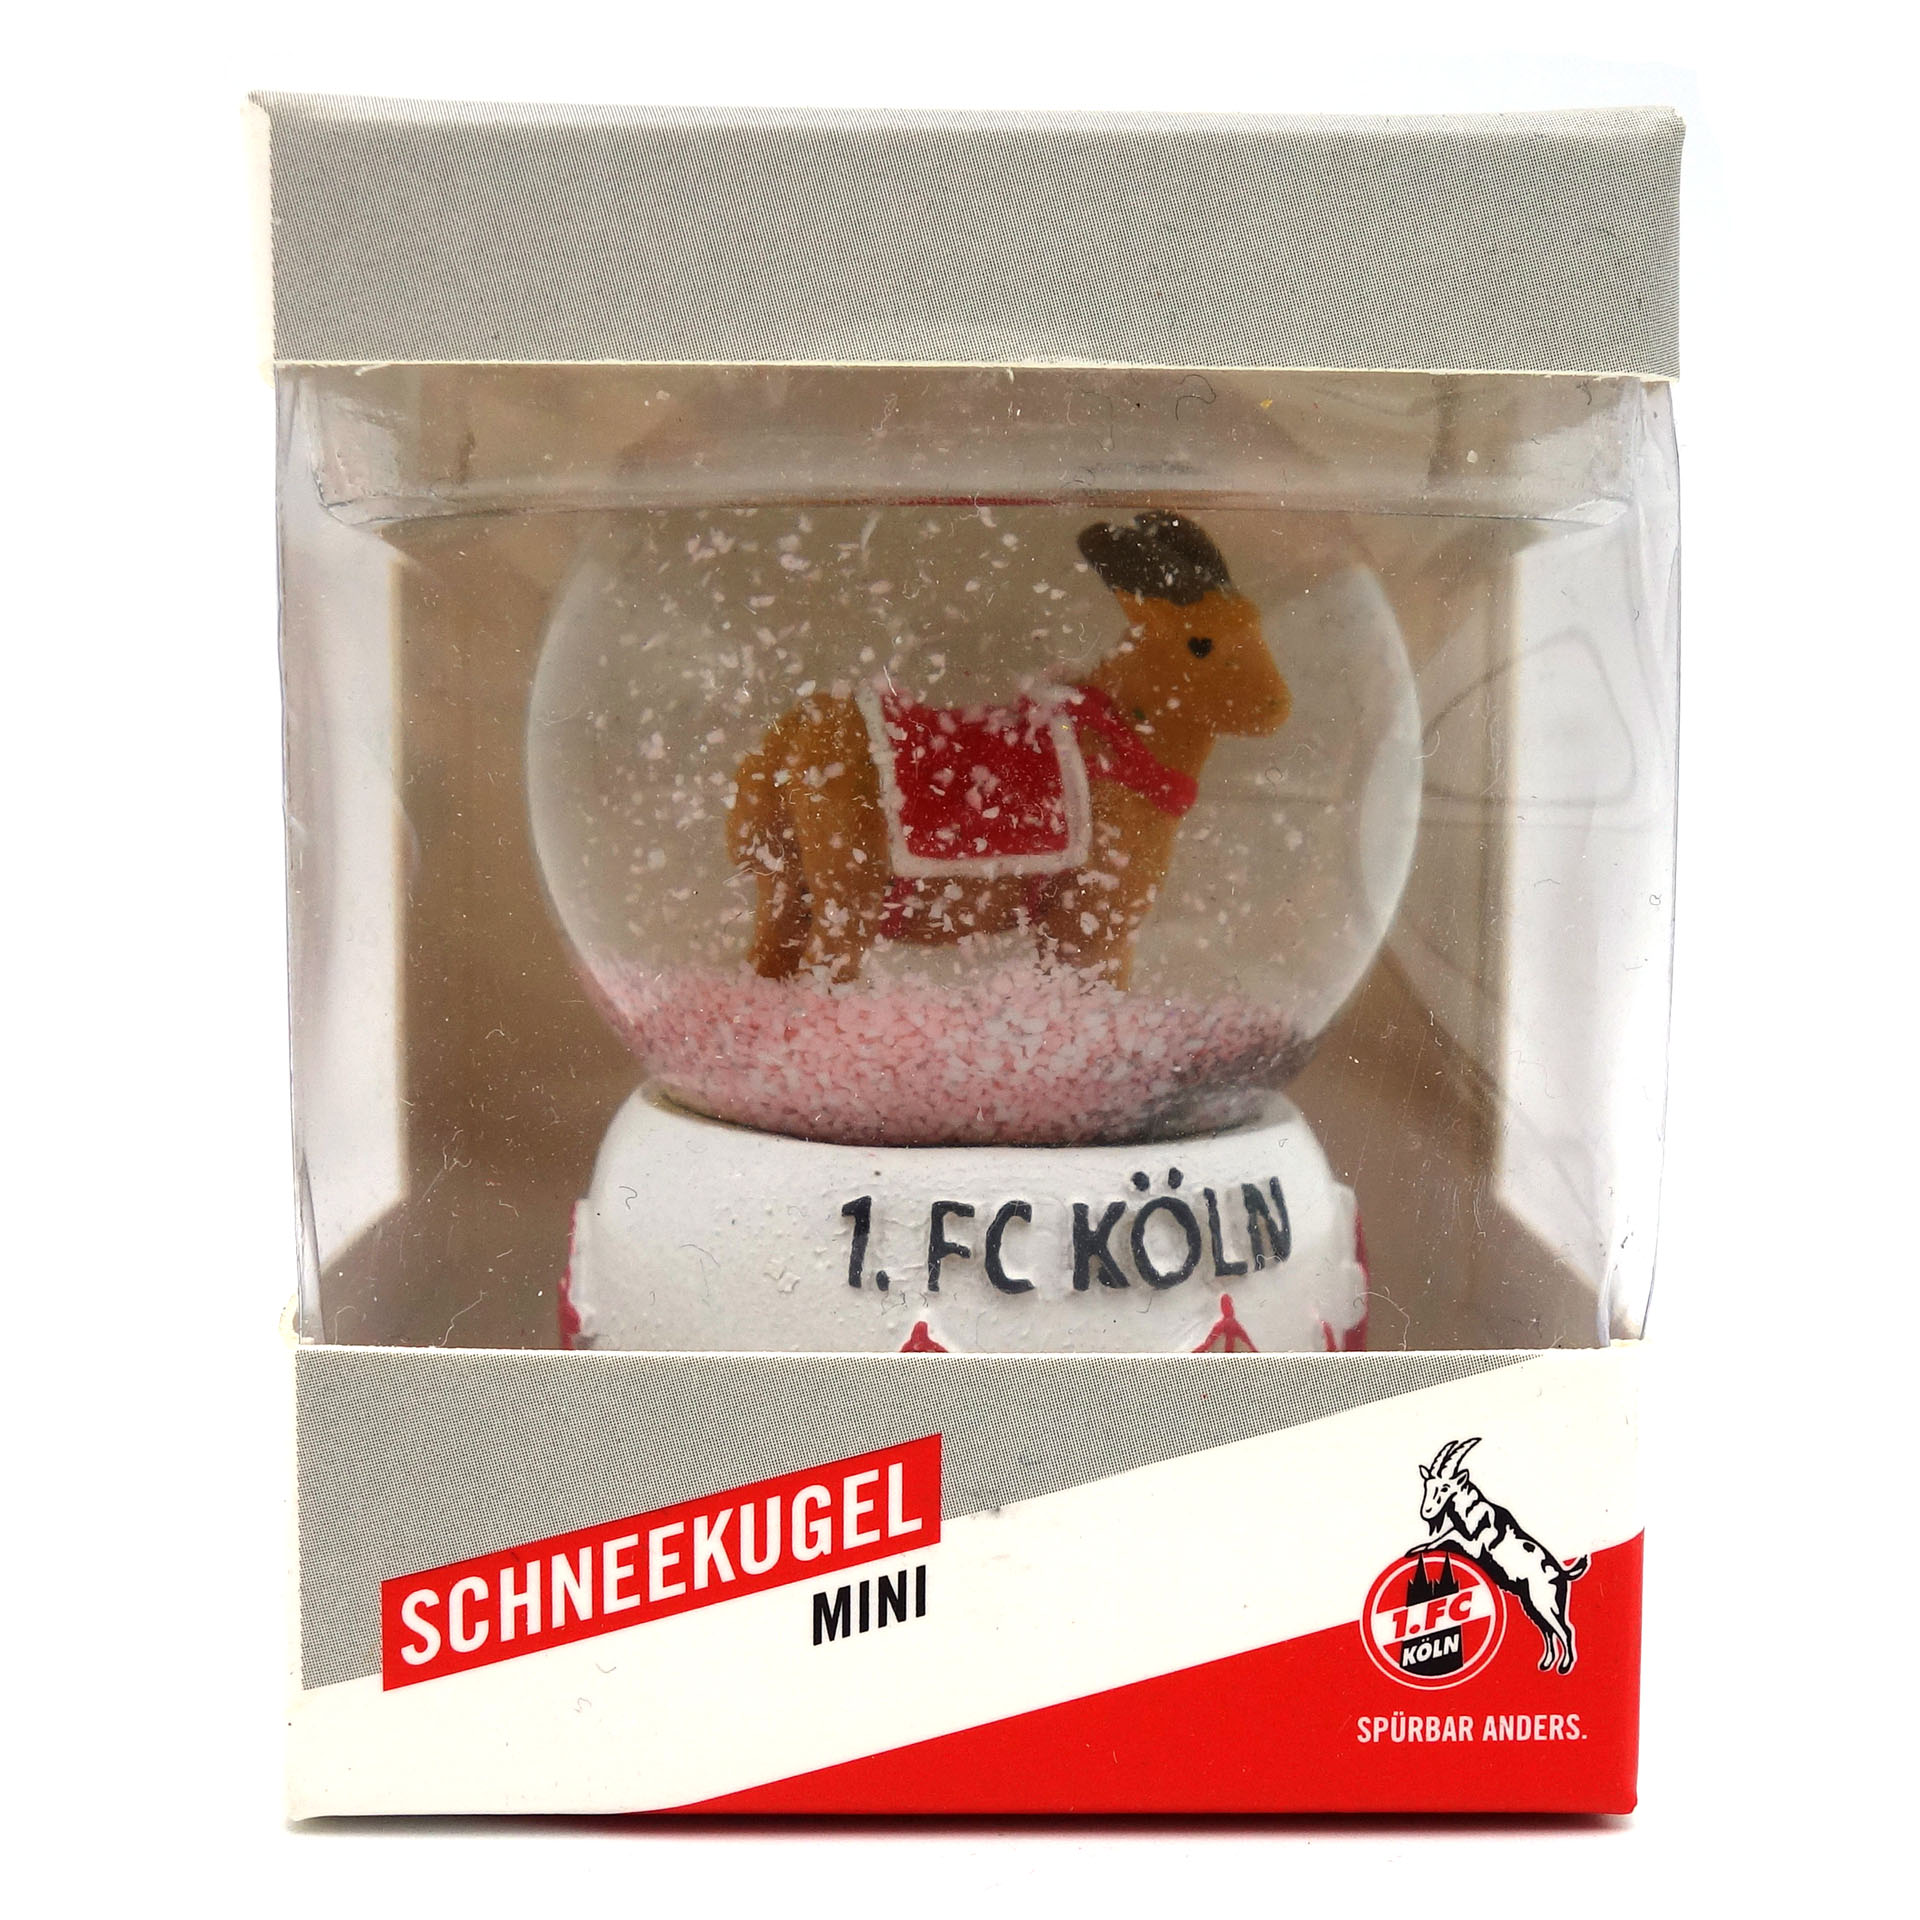 1.FC Köln Schneekugel Mini